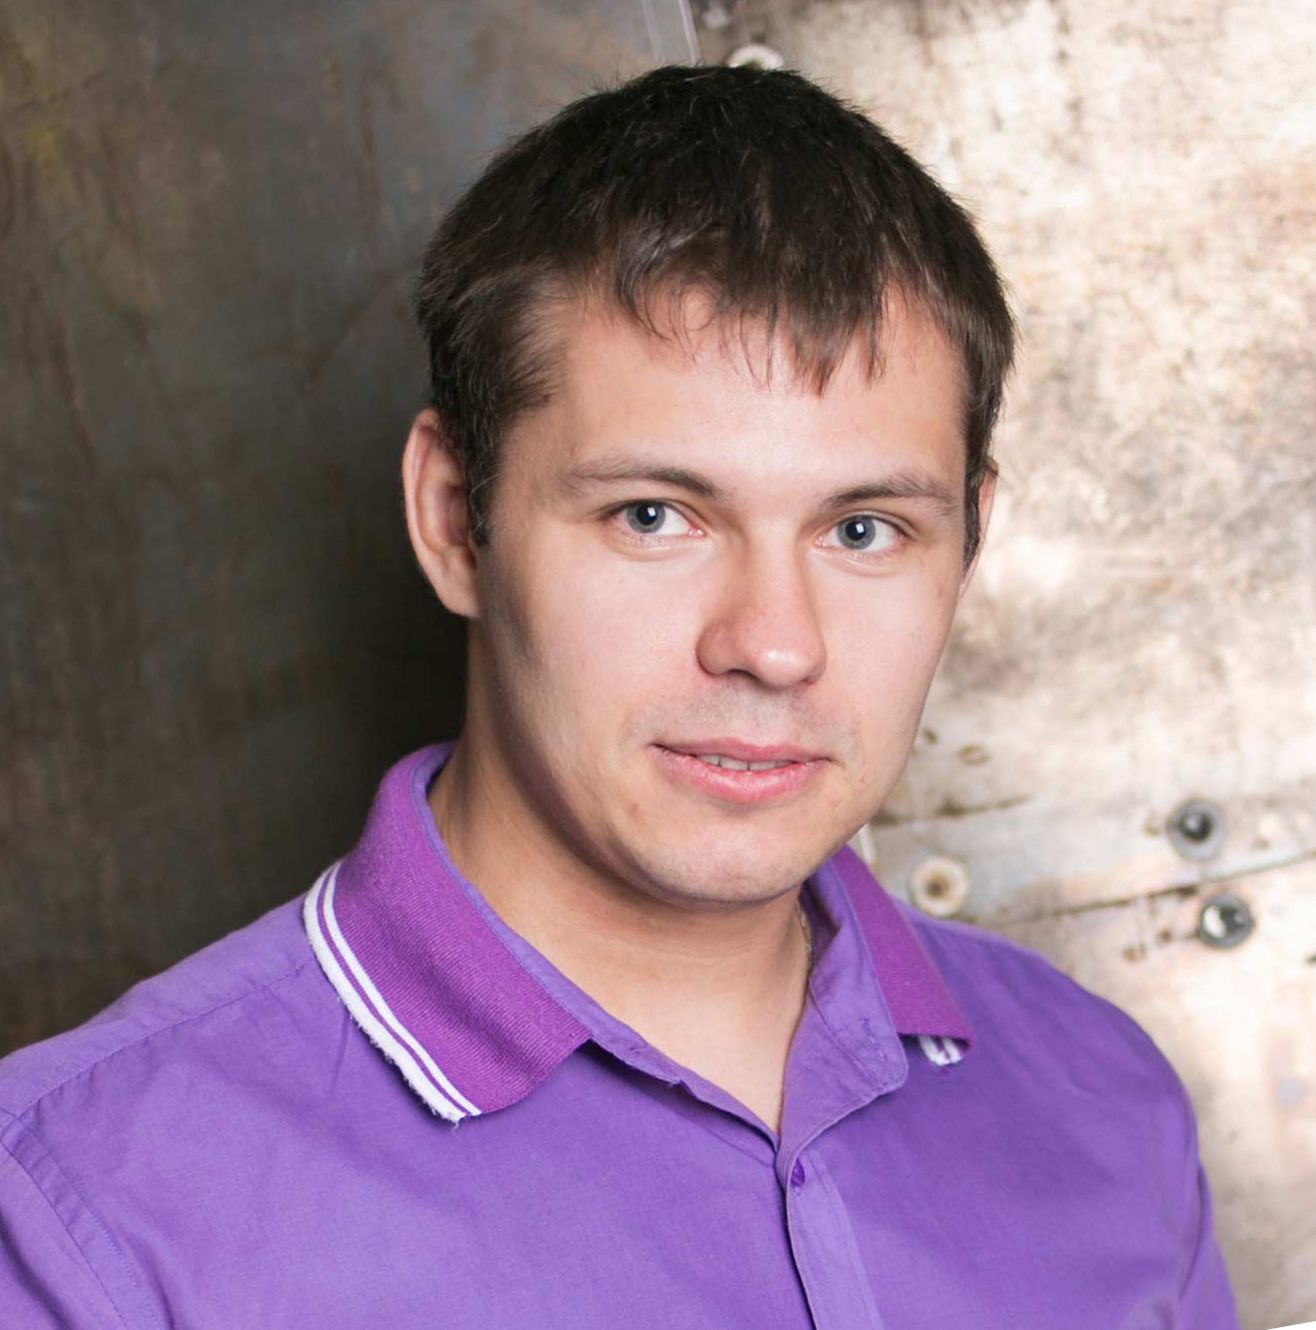 Dmitry Morozov